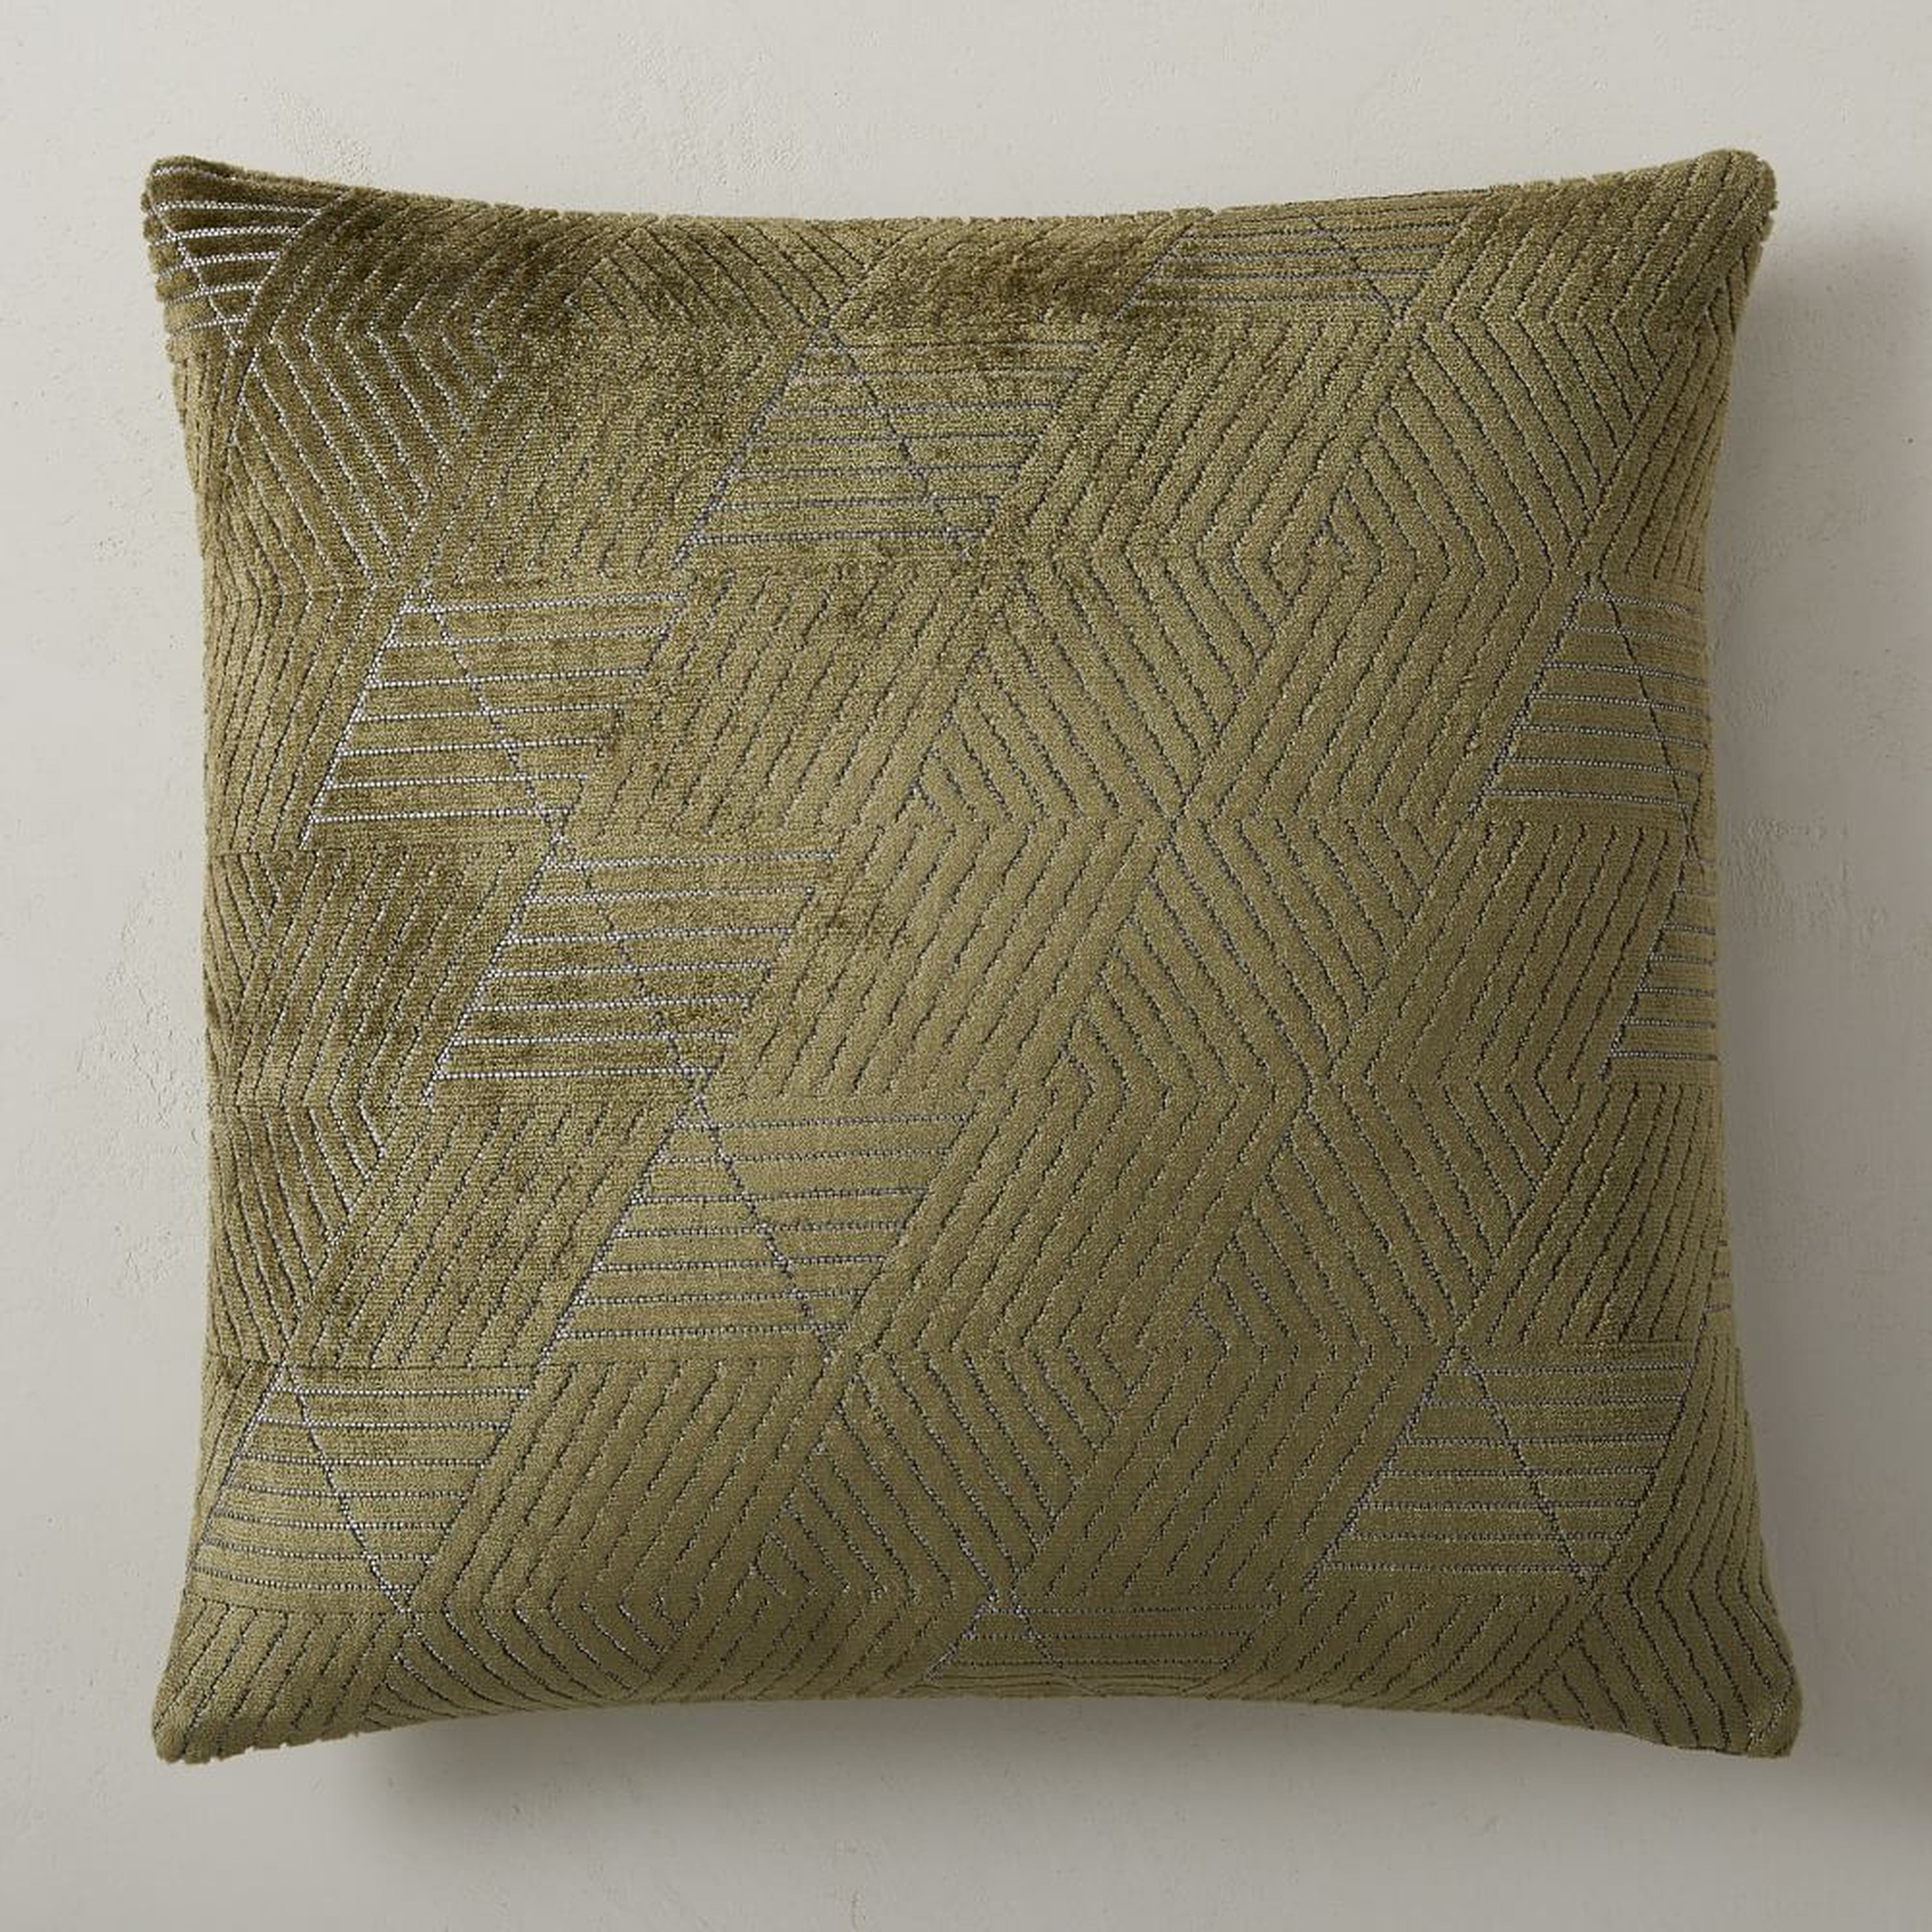 Geo Facet Jacquard Velvet Pillow Cover, 20"x20", Dark Olive - West Elm